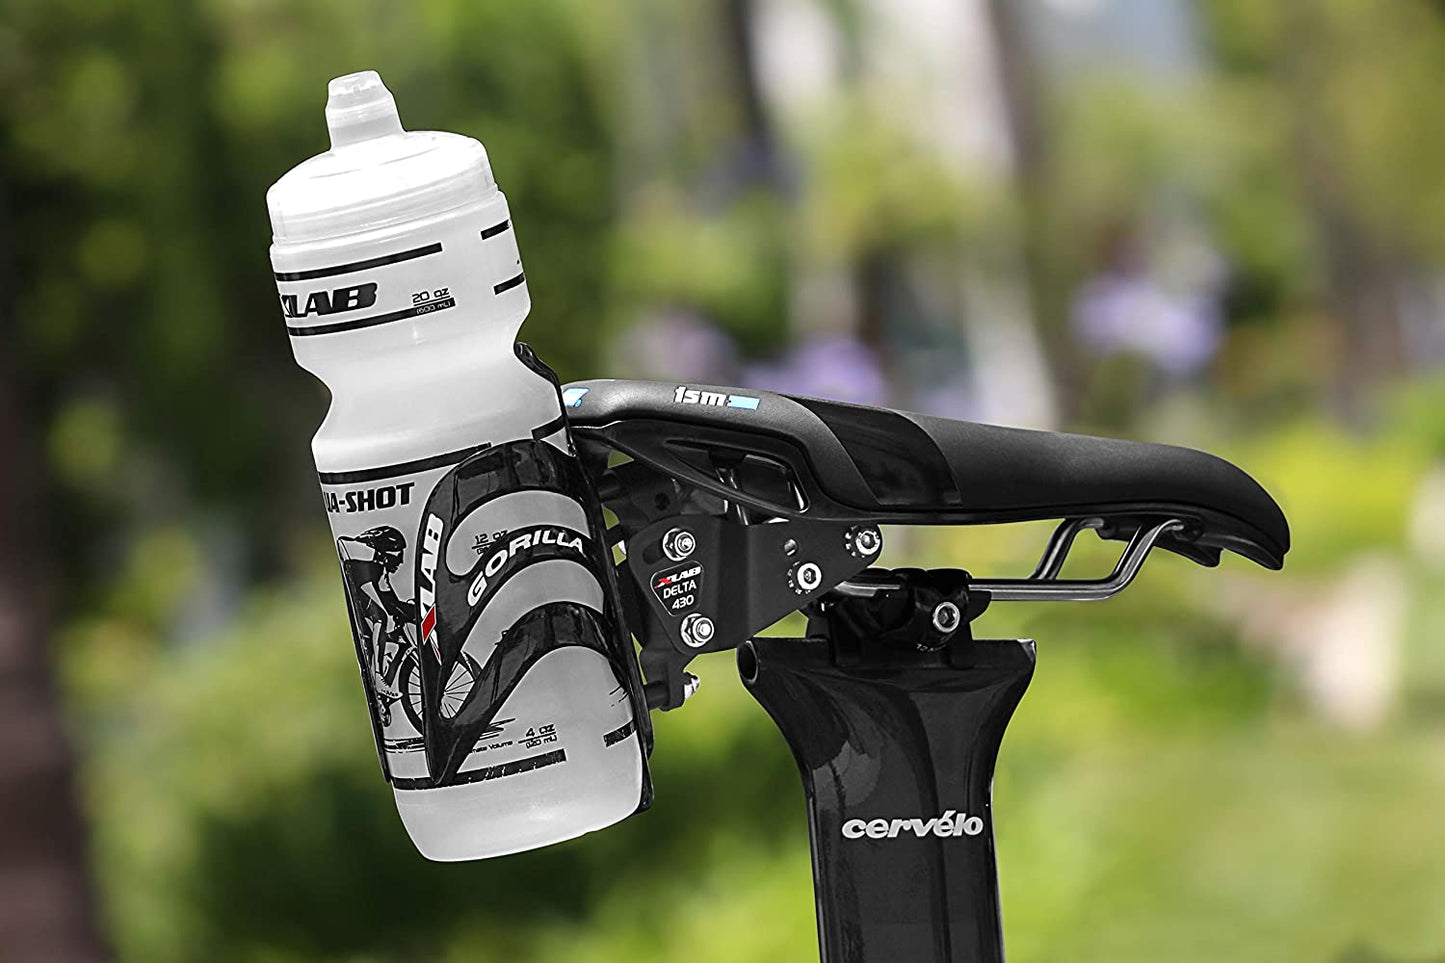 XLAB Delta 430 Rear Hydration System for Triathlon and Road Bikes